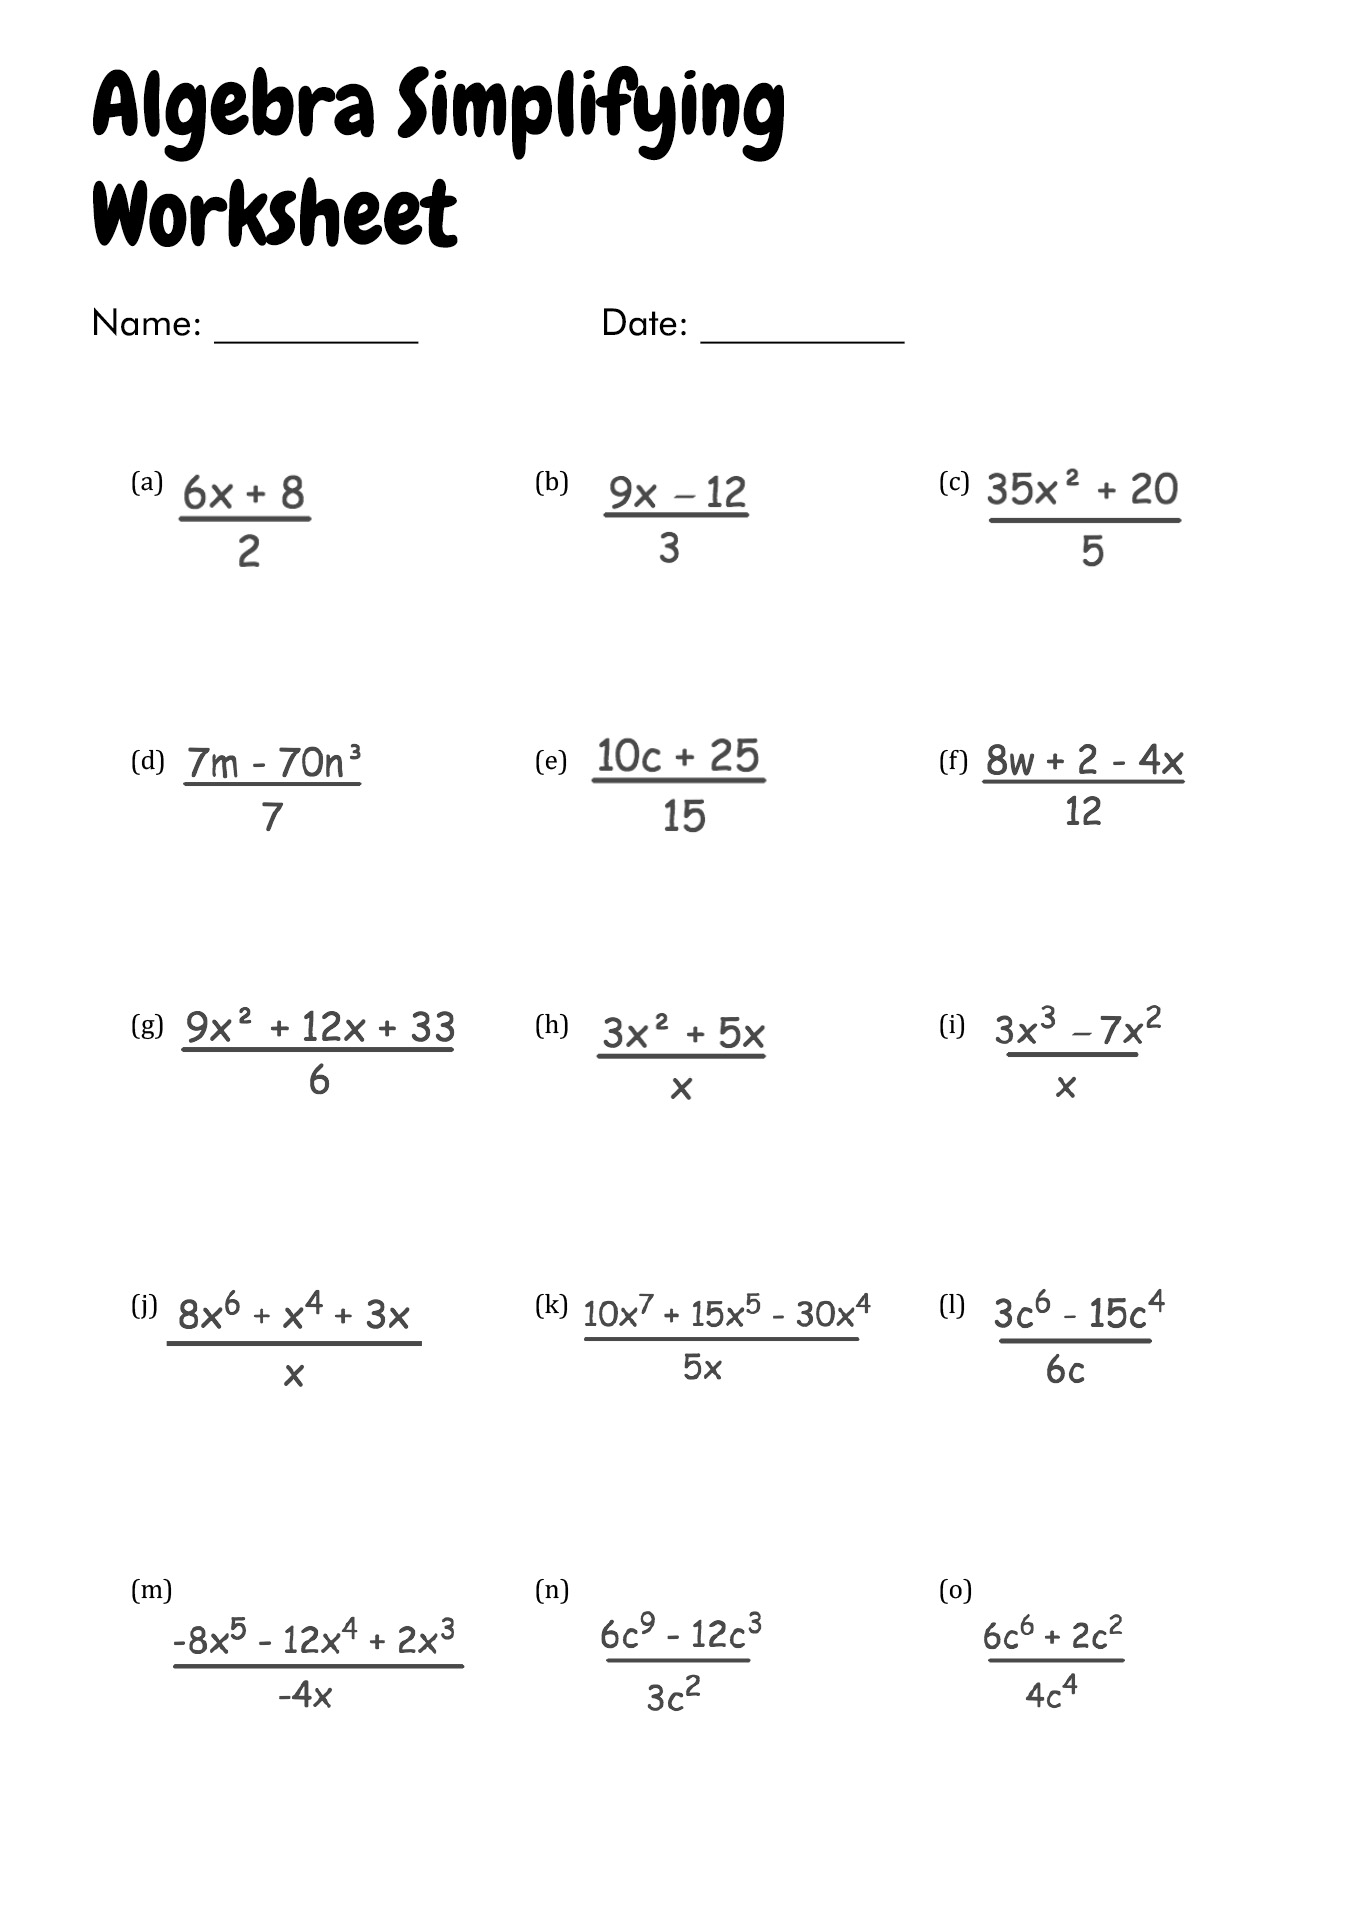 Algebra Simplifying Fractions Worksheet Image